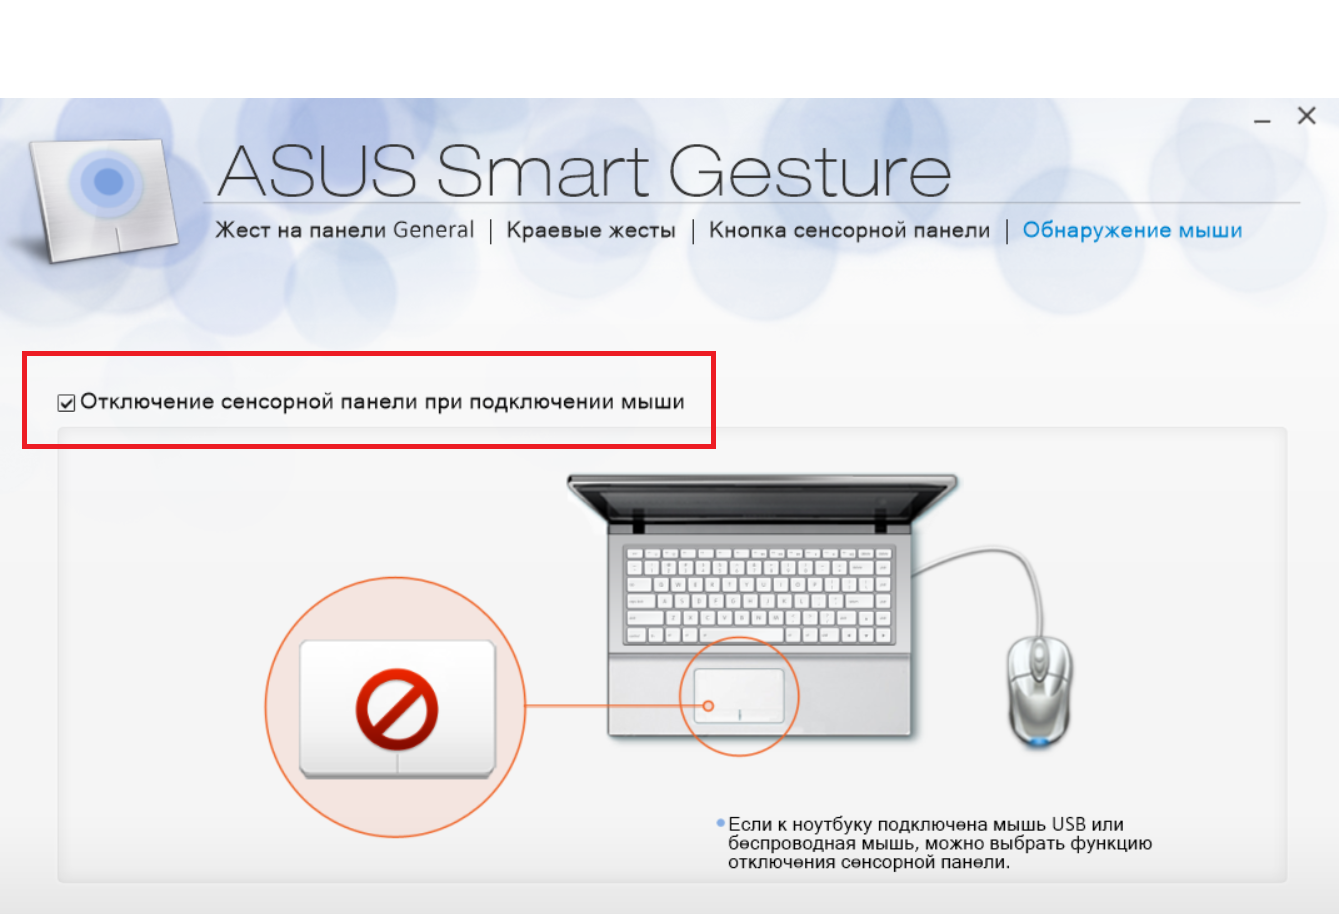 smart gesture windows 10 download